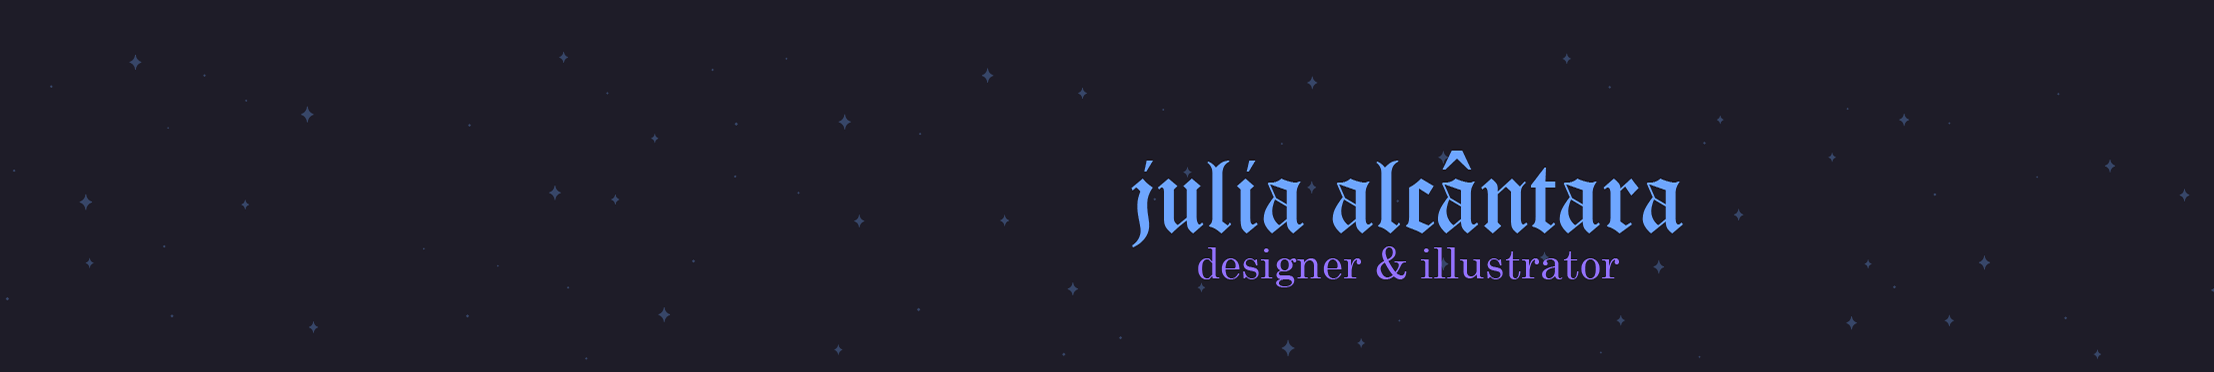 Julia Alcântara のプロファイルバナー